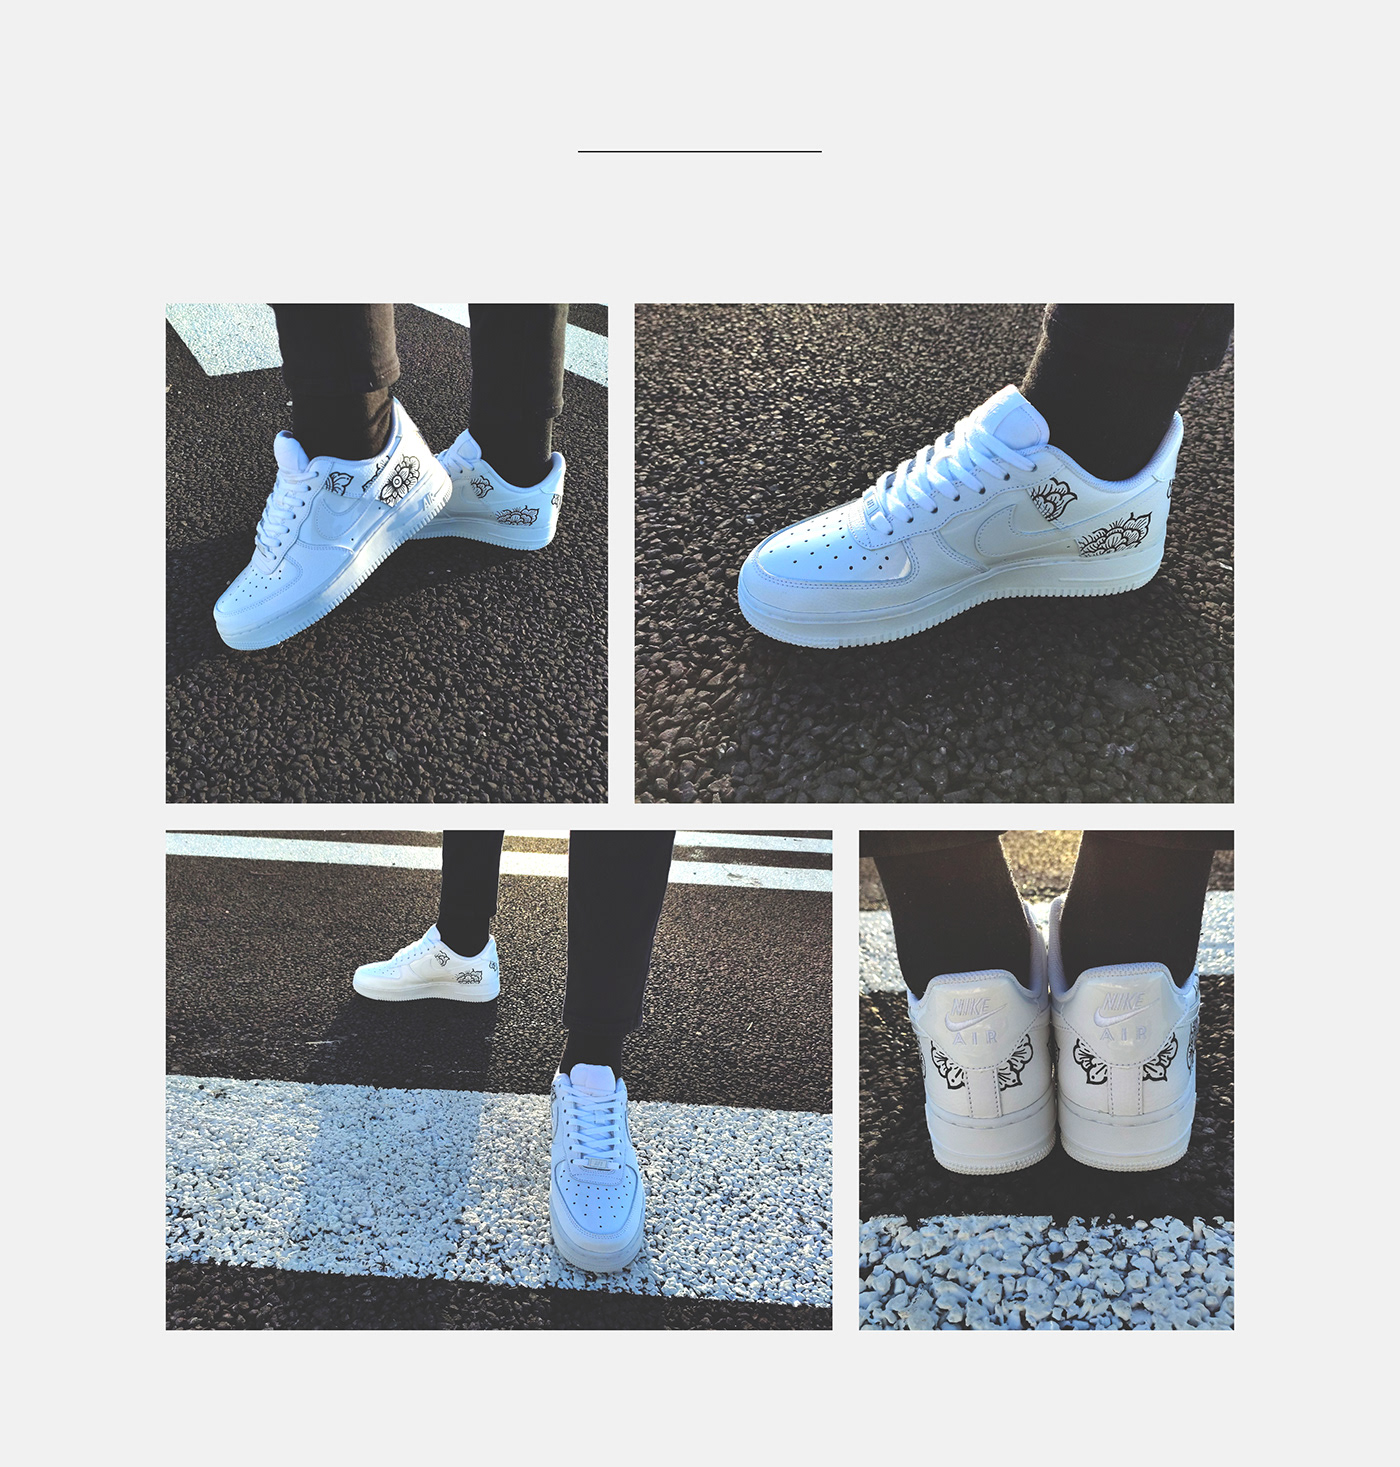 Nike sneaker customization Posca shoe blackandwhite airforce1 nikeair